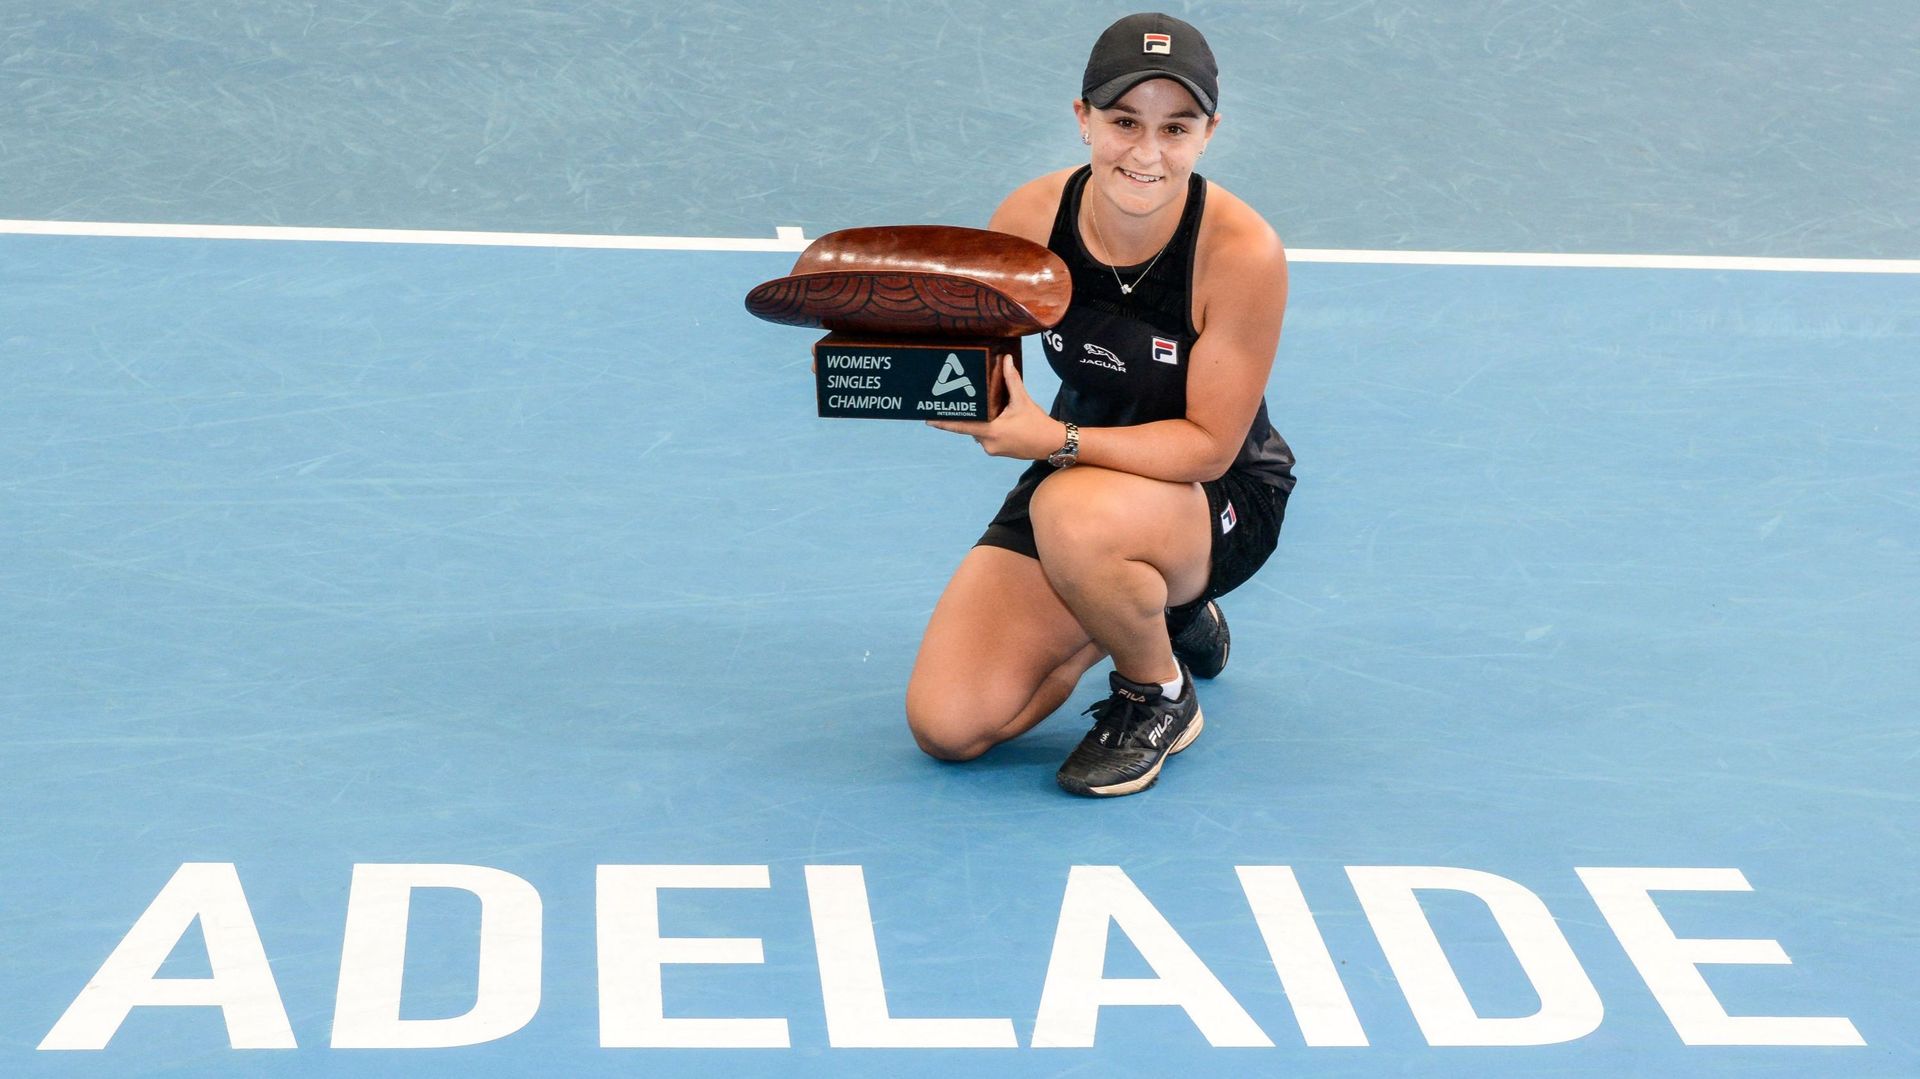 WTA - Adélaïde: Barty expédie Rybakina et se pose en favorite de l'Open d'Australie